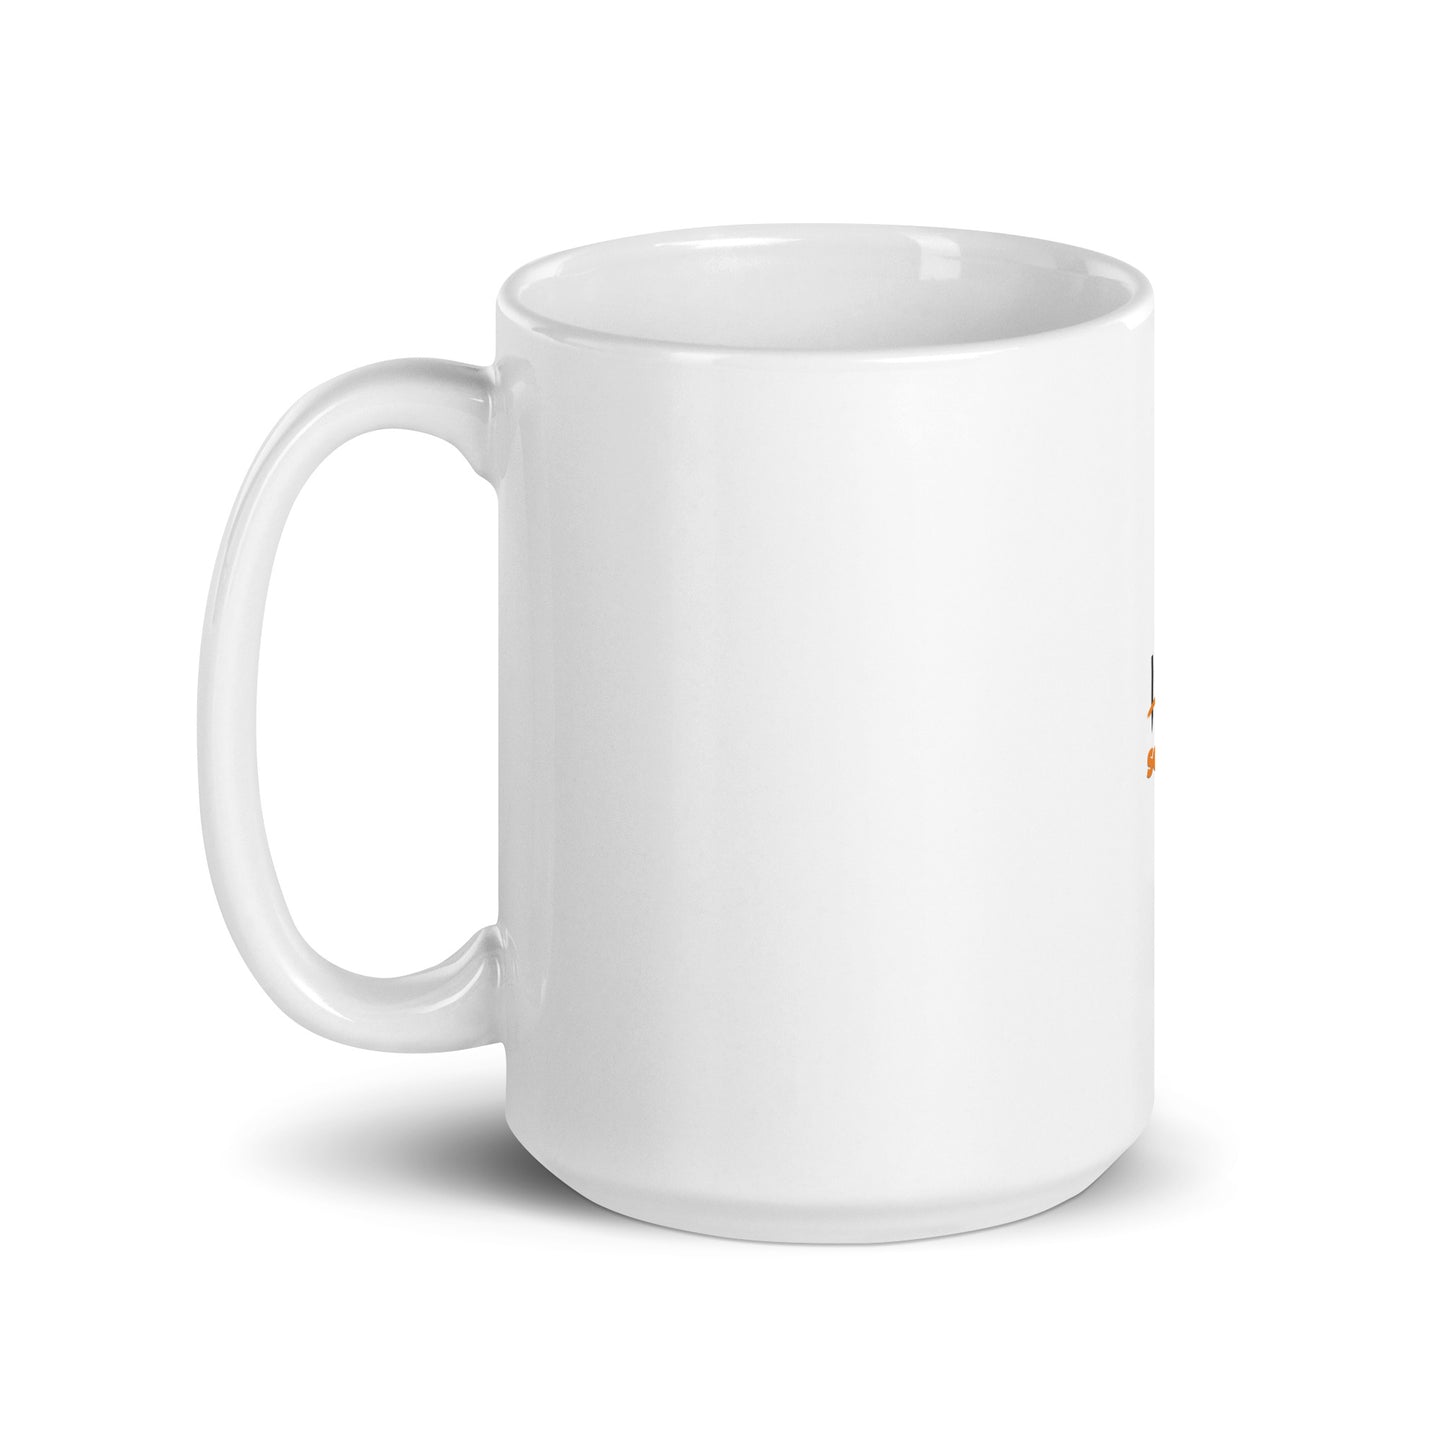 Seven - white ceramic mug